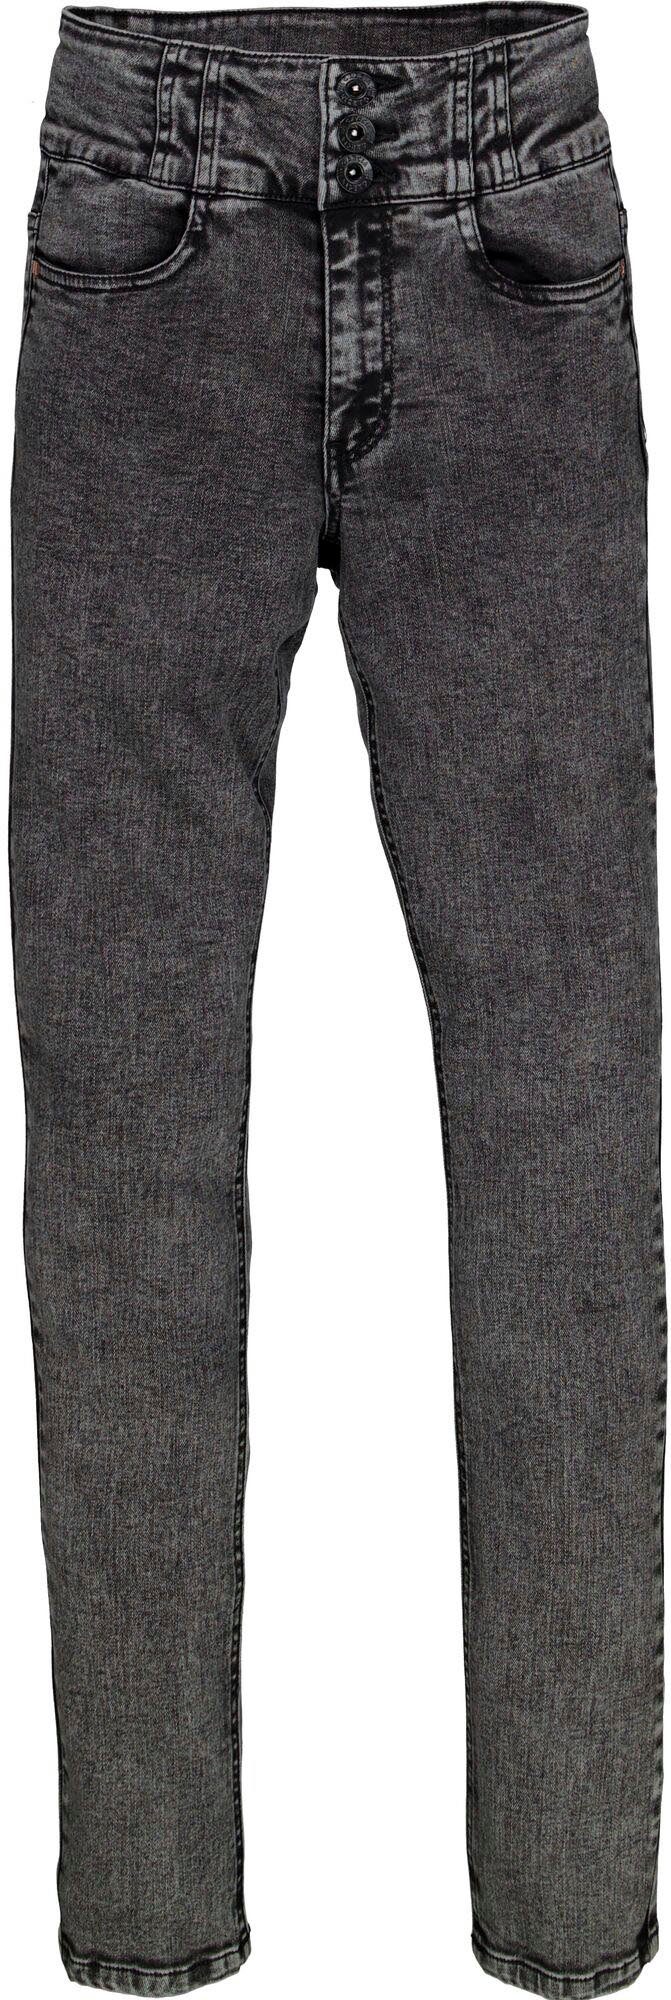 Kinder Teens (Gr. 128 - 182) Garcia Stretch-Jeans